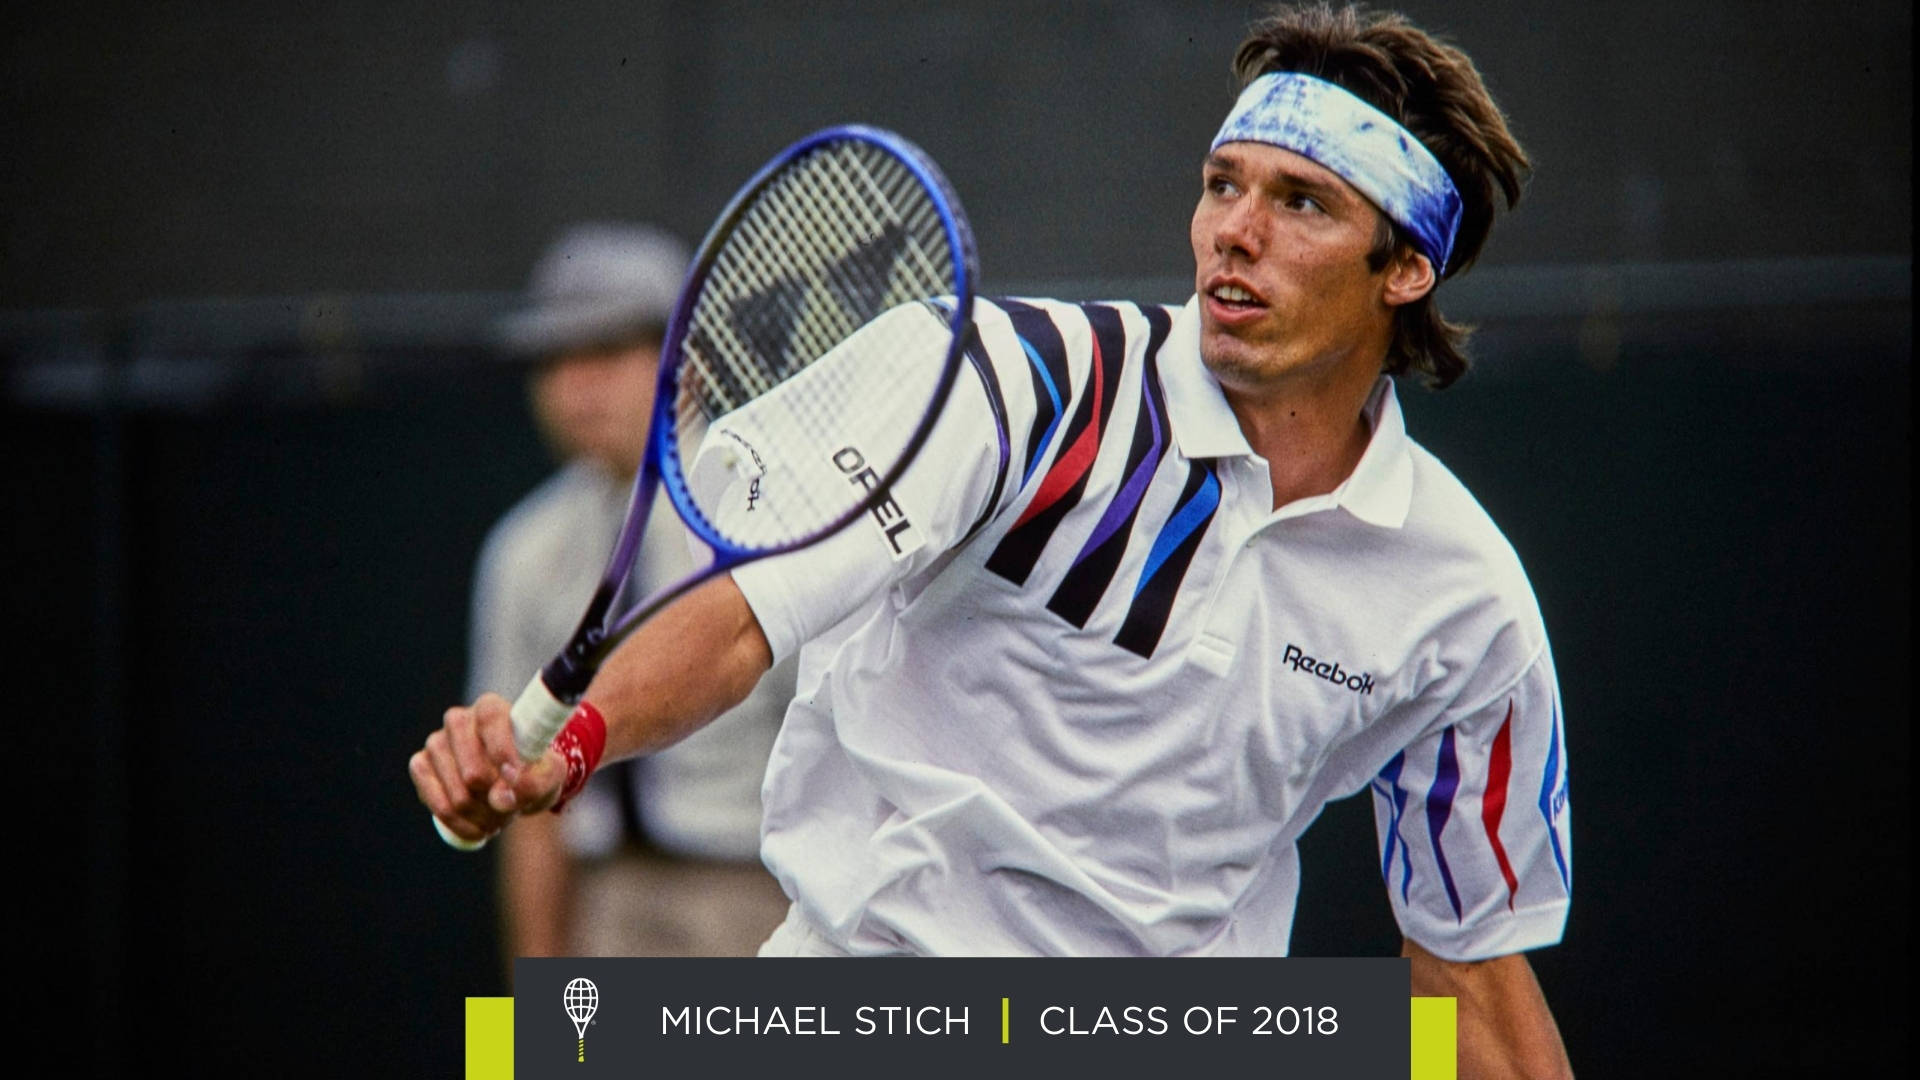 Michael Stich Class Of 2018 Wallpaper